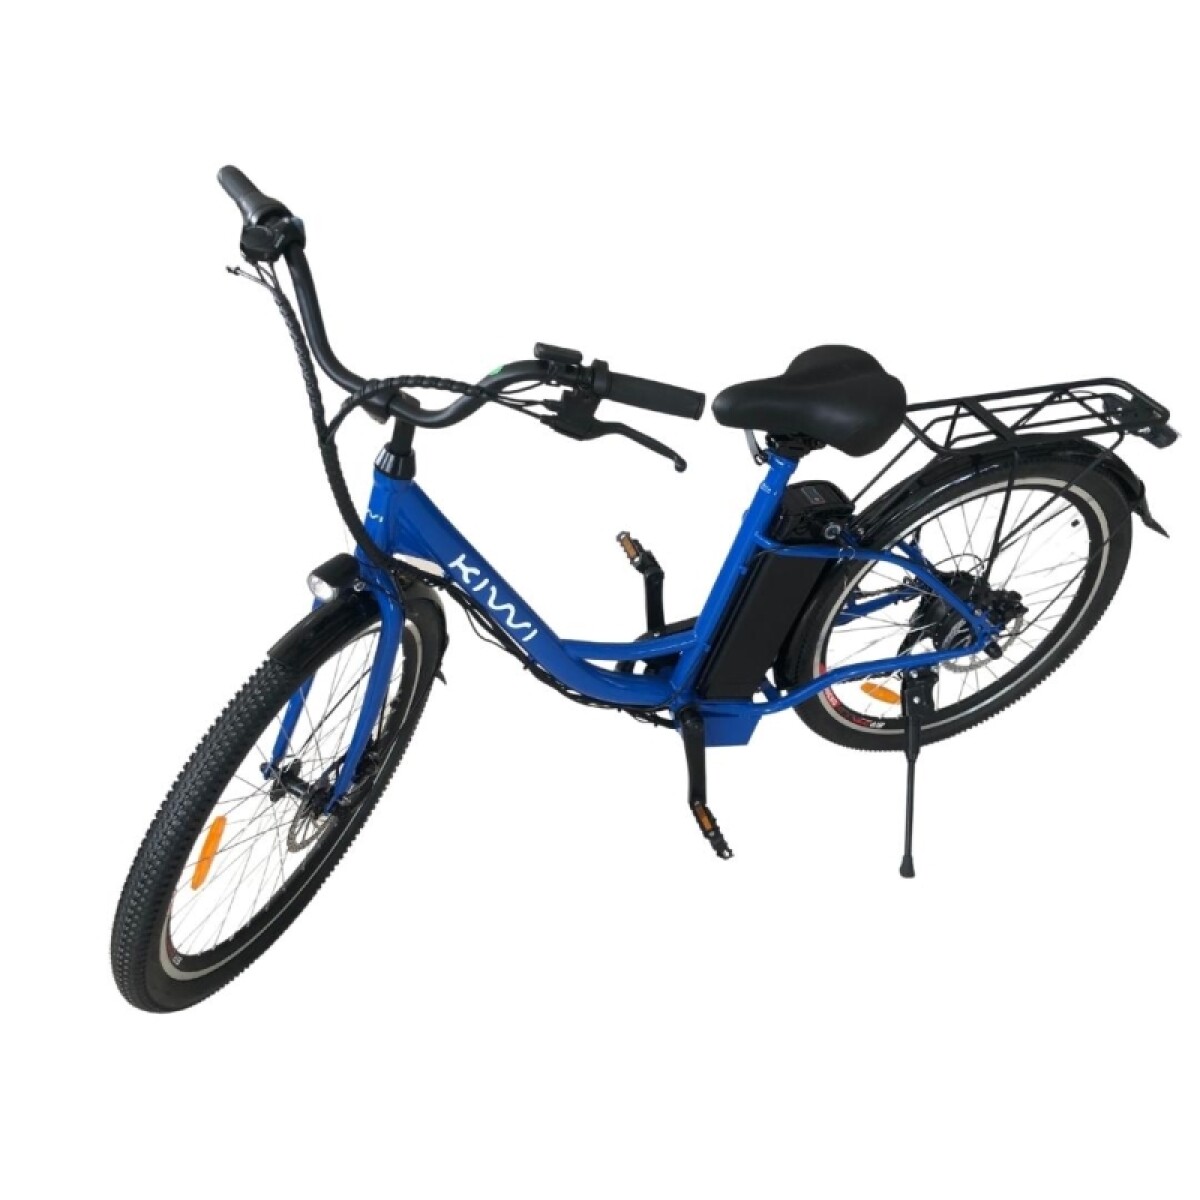 Bicicleta Electrica Kiwi Lady R.26 - Azul 